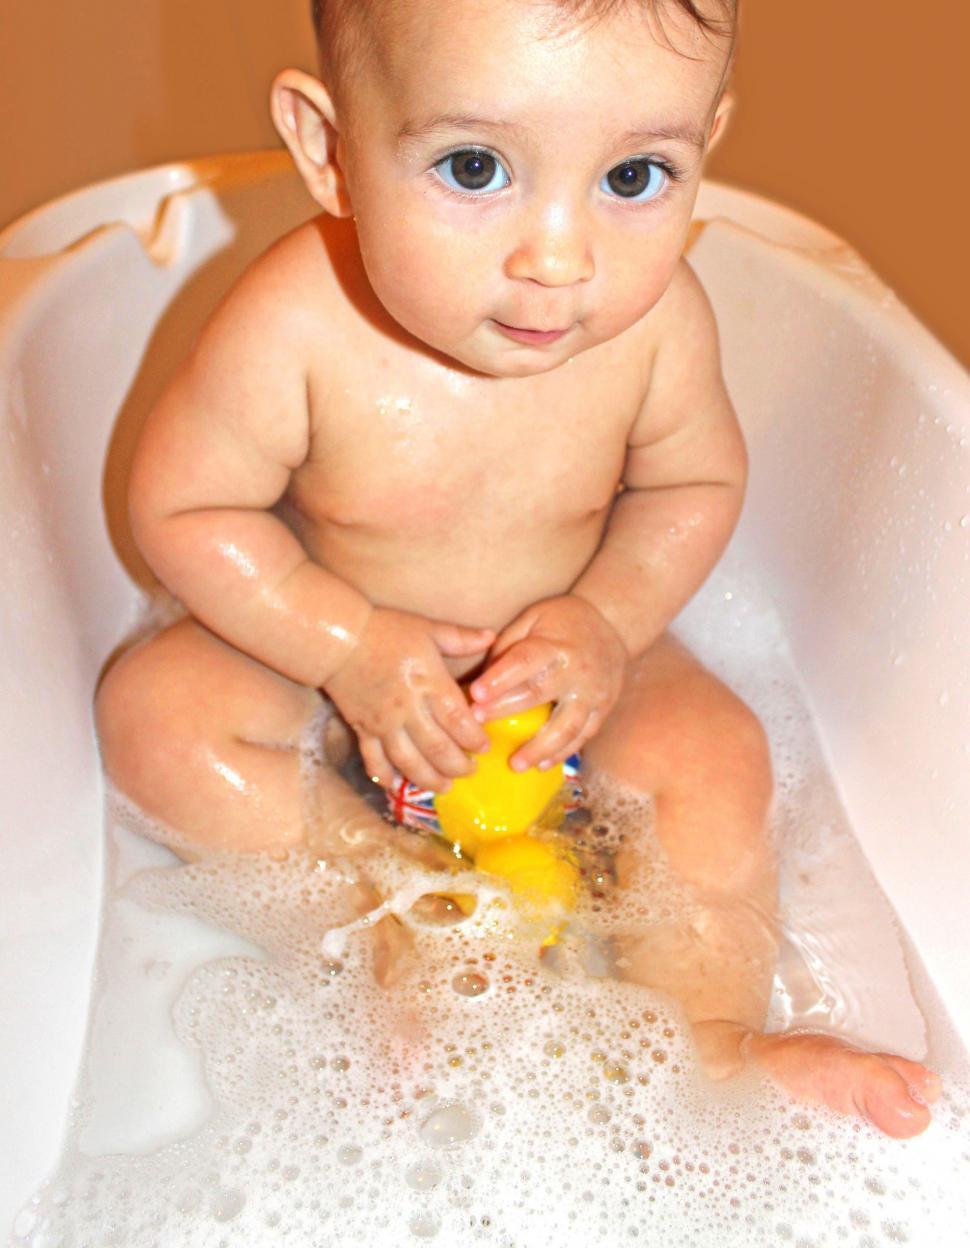 Free Image of Baby with large dark eyes bathing 